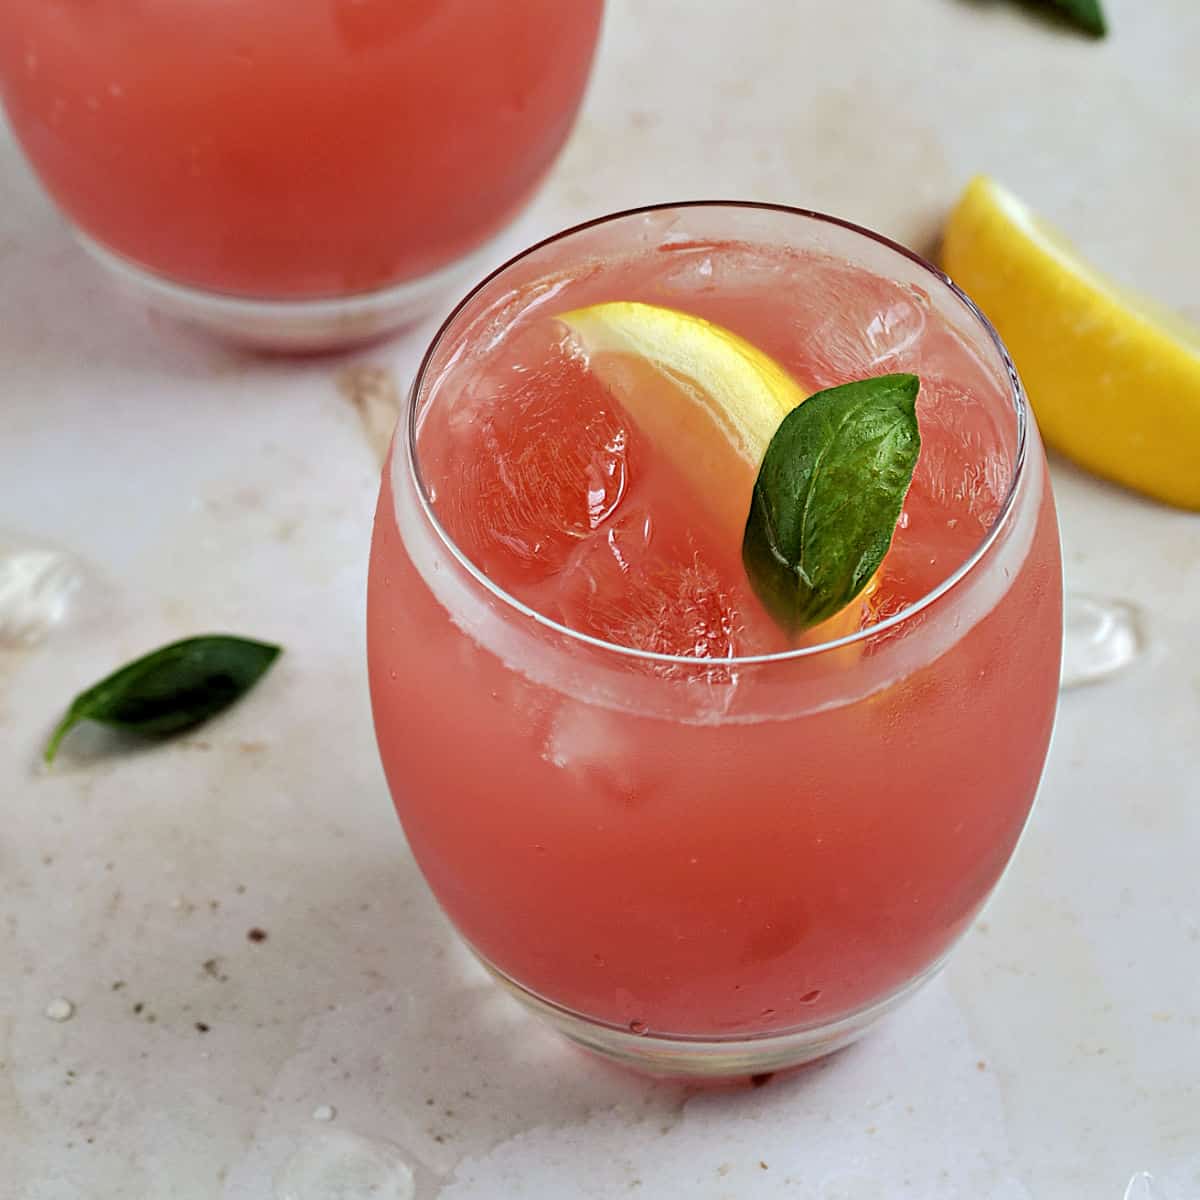 Watermelon Basil Lemonade